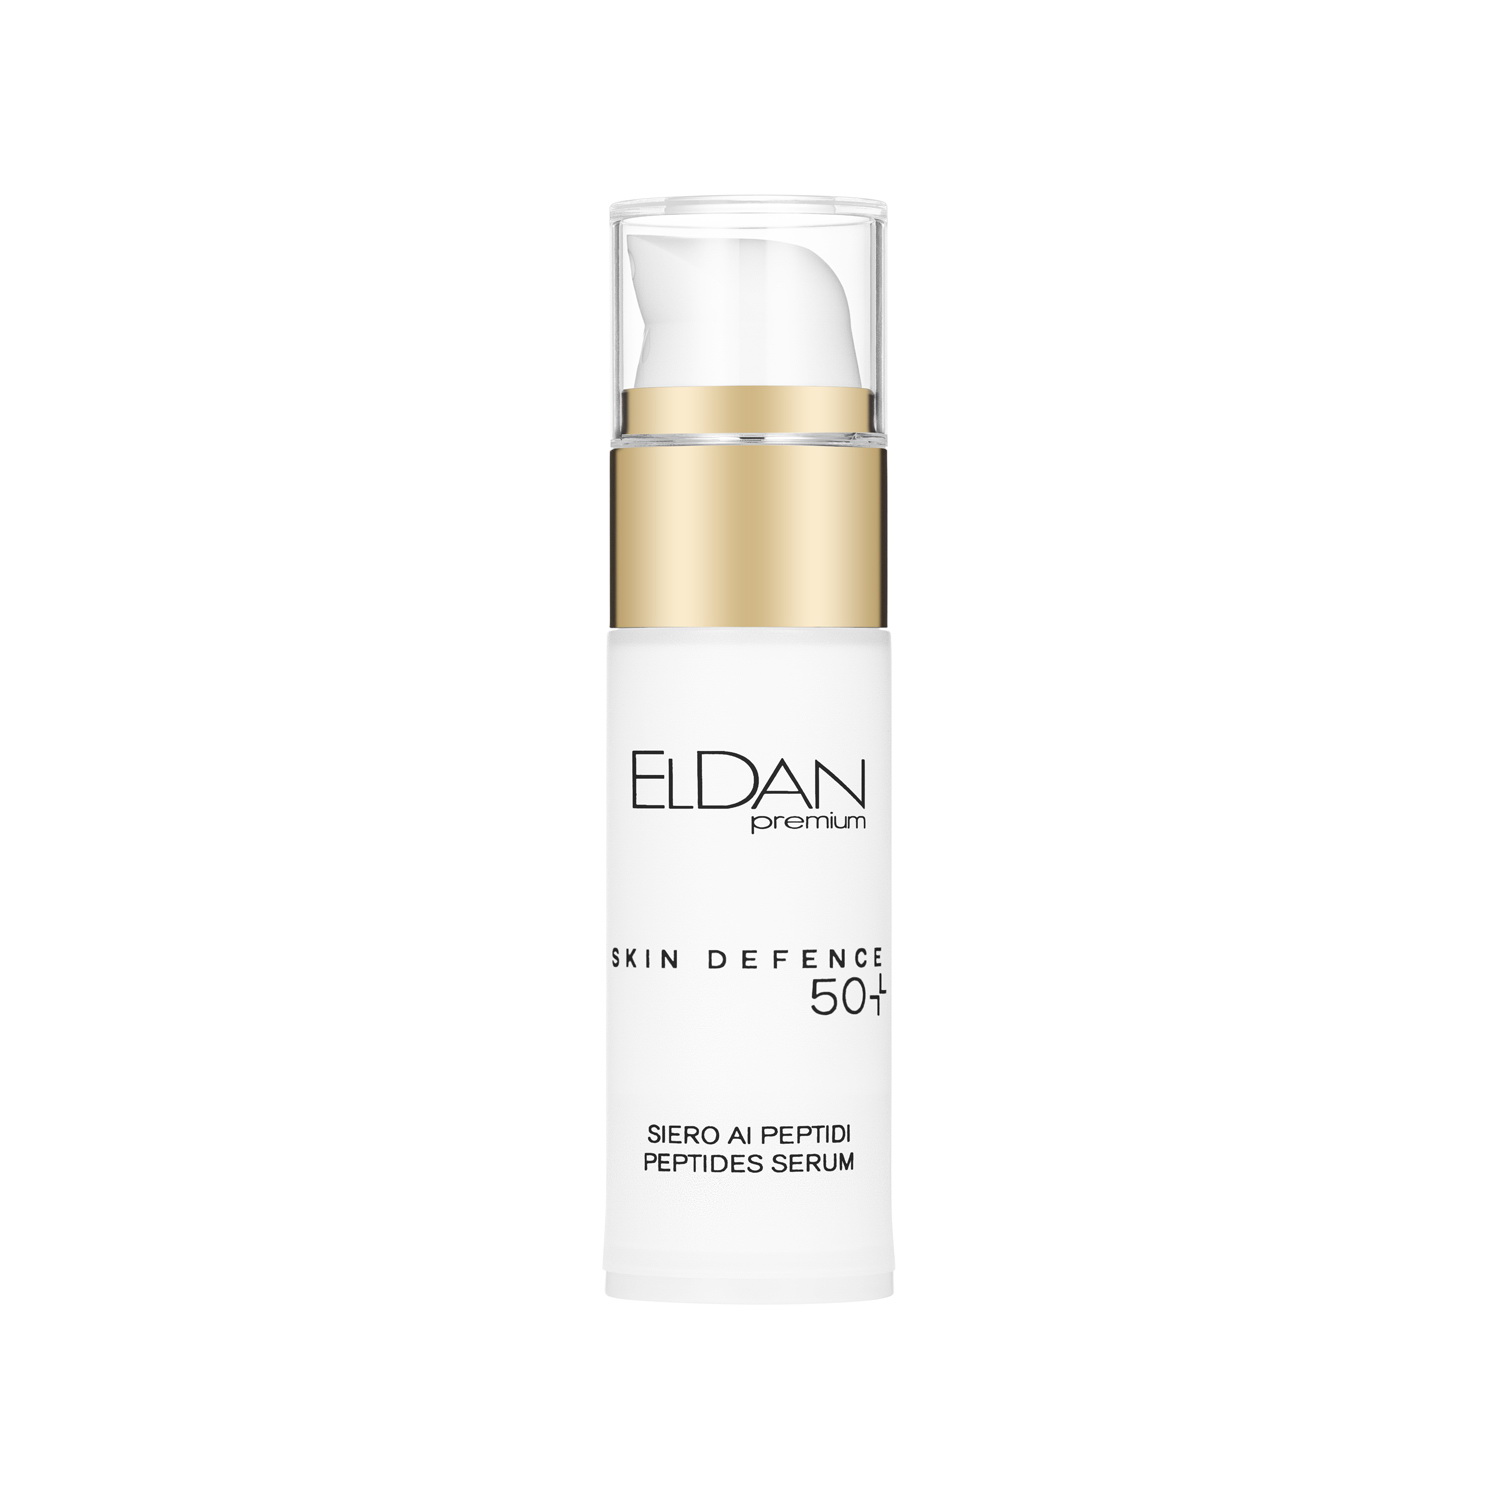 Сыворотка для лица ELDAN Premium Pepto Skin Defence 50+ пептидная, антивозрастная, 30 мл eldan средство для упругости и объема губ premium 15 мл